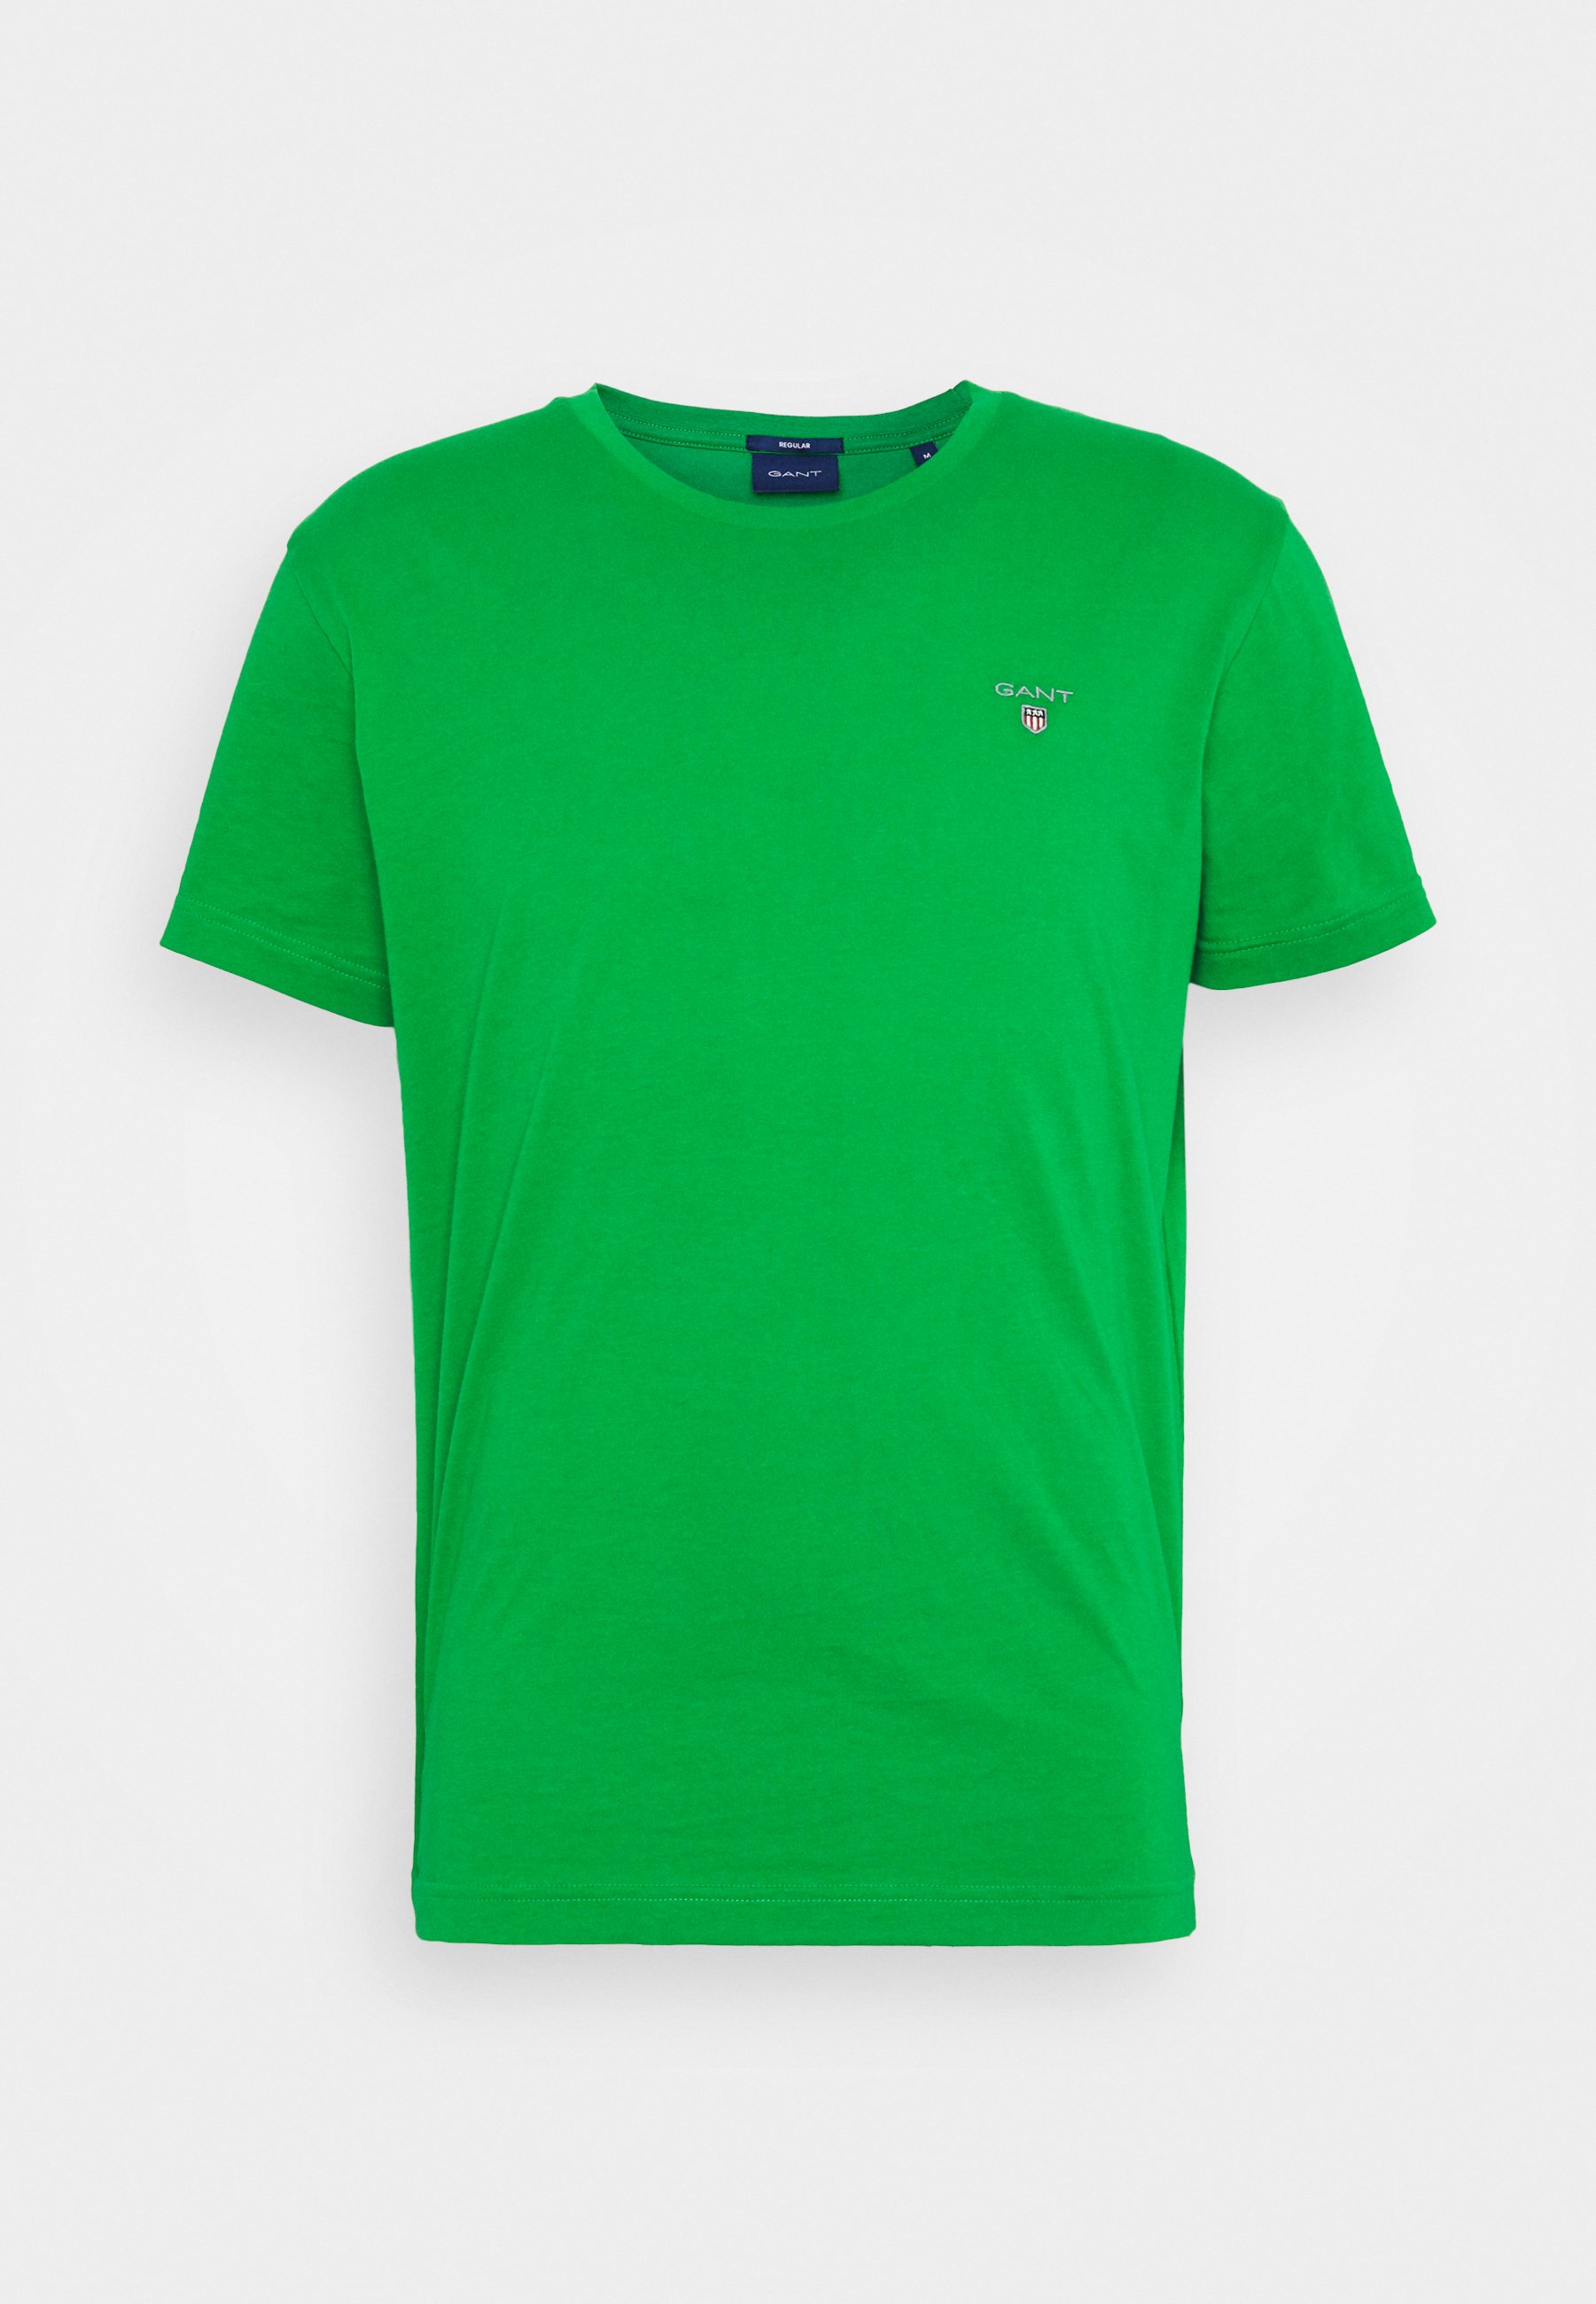 USA Fejl Vejnavn Gant Men&#039;s The Original Fitted T-Shirt (234102) | eBay